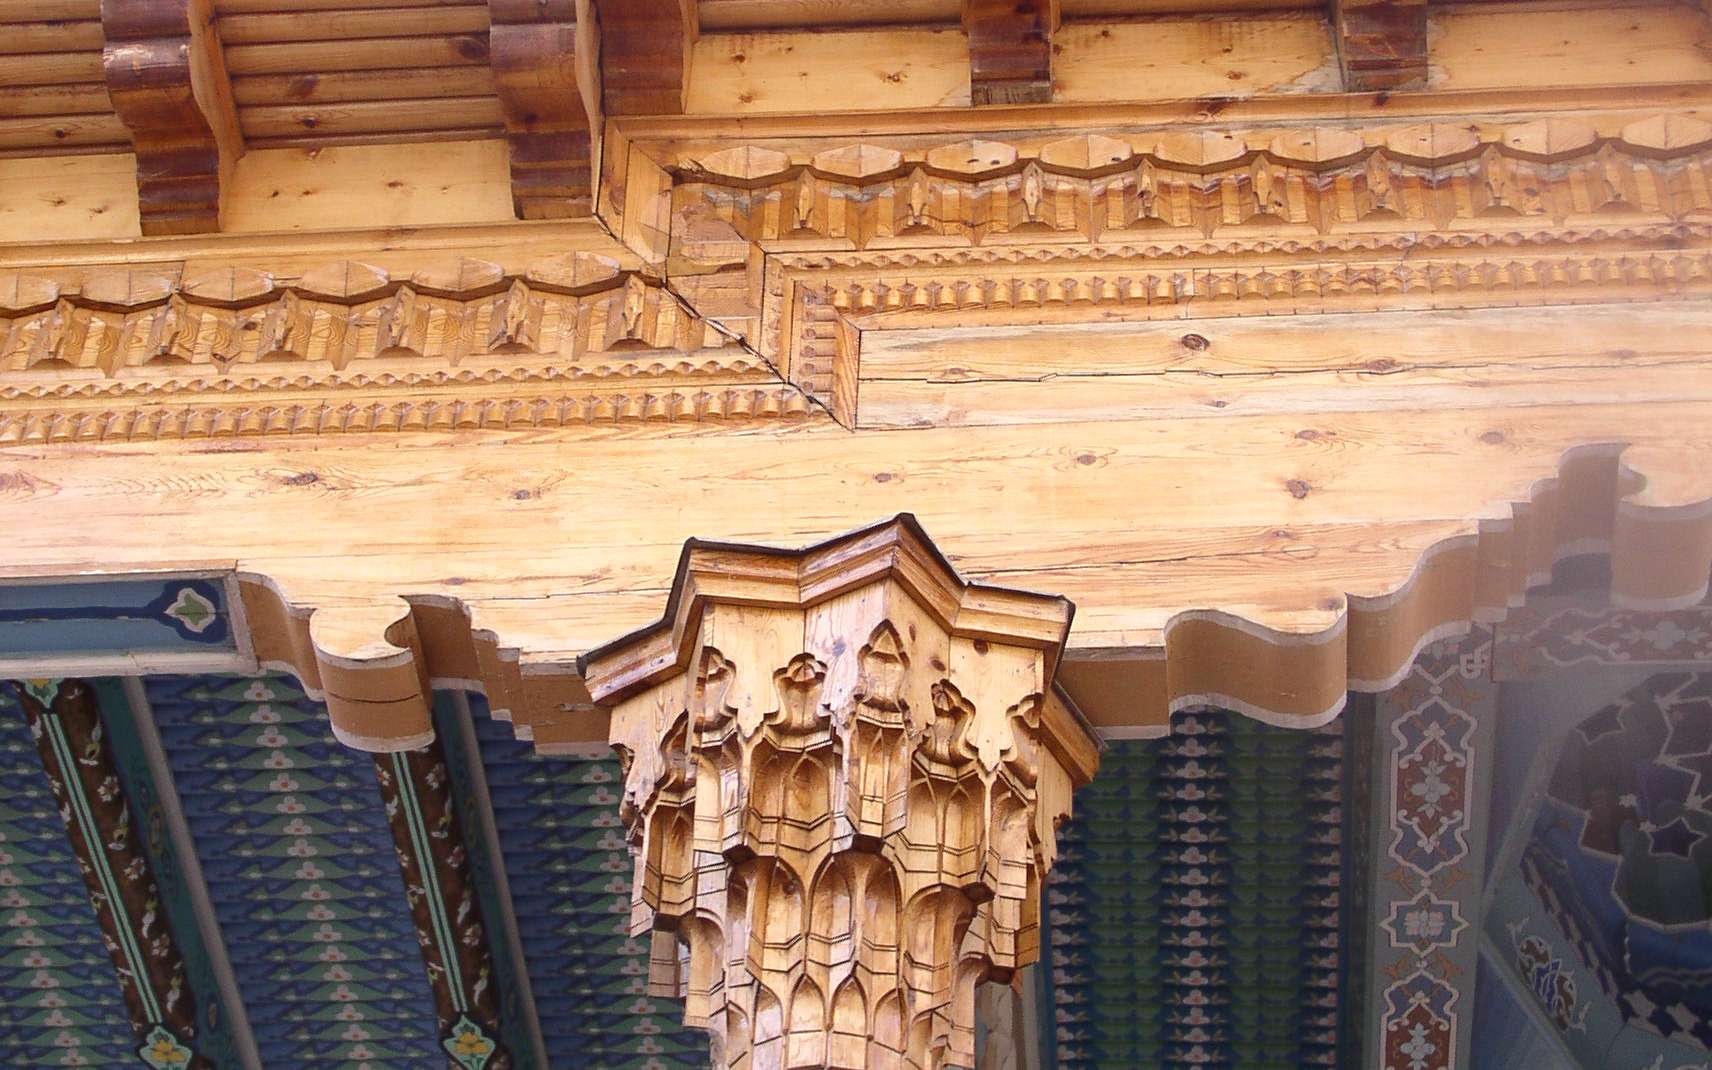 Les chapiteaux et les colonnes sont régis par les ordres architecturaux. © Alaexis, CC BY-SA 3.0, Wikimedia Commons